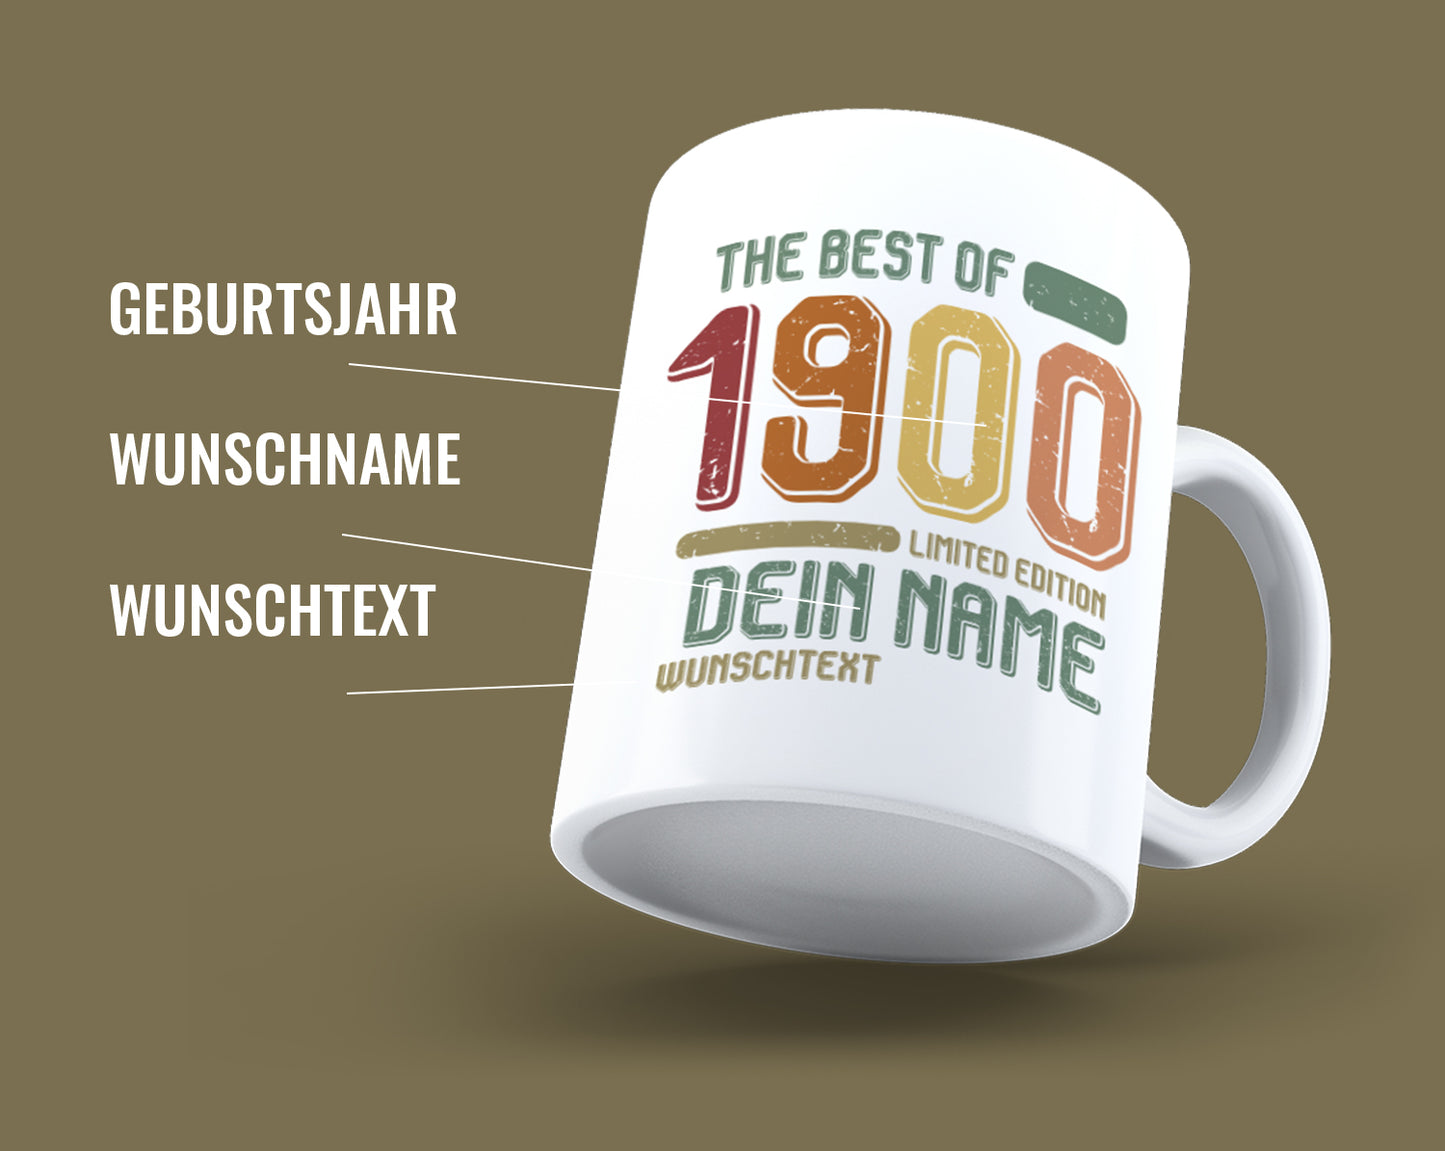 Kaffeetasse zum Geburtstag: The best of 19?? Dein Jahr Limited Edition Vintage personalisiert mit Name und einen Wunschtext. Tragen Sie einfach bitte das Jahr ein, den Namen und ein Wunschtext und wir erstellen ihr ganz persönliches Geschenk.